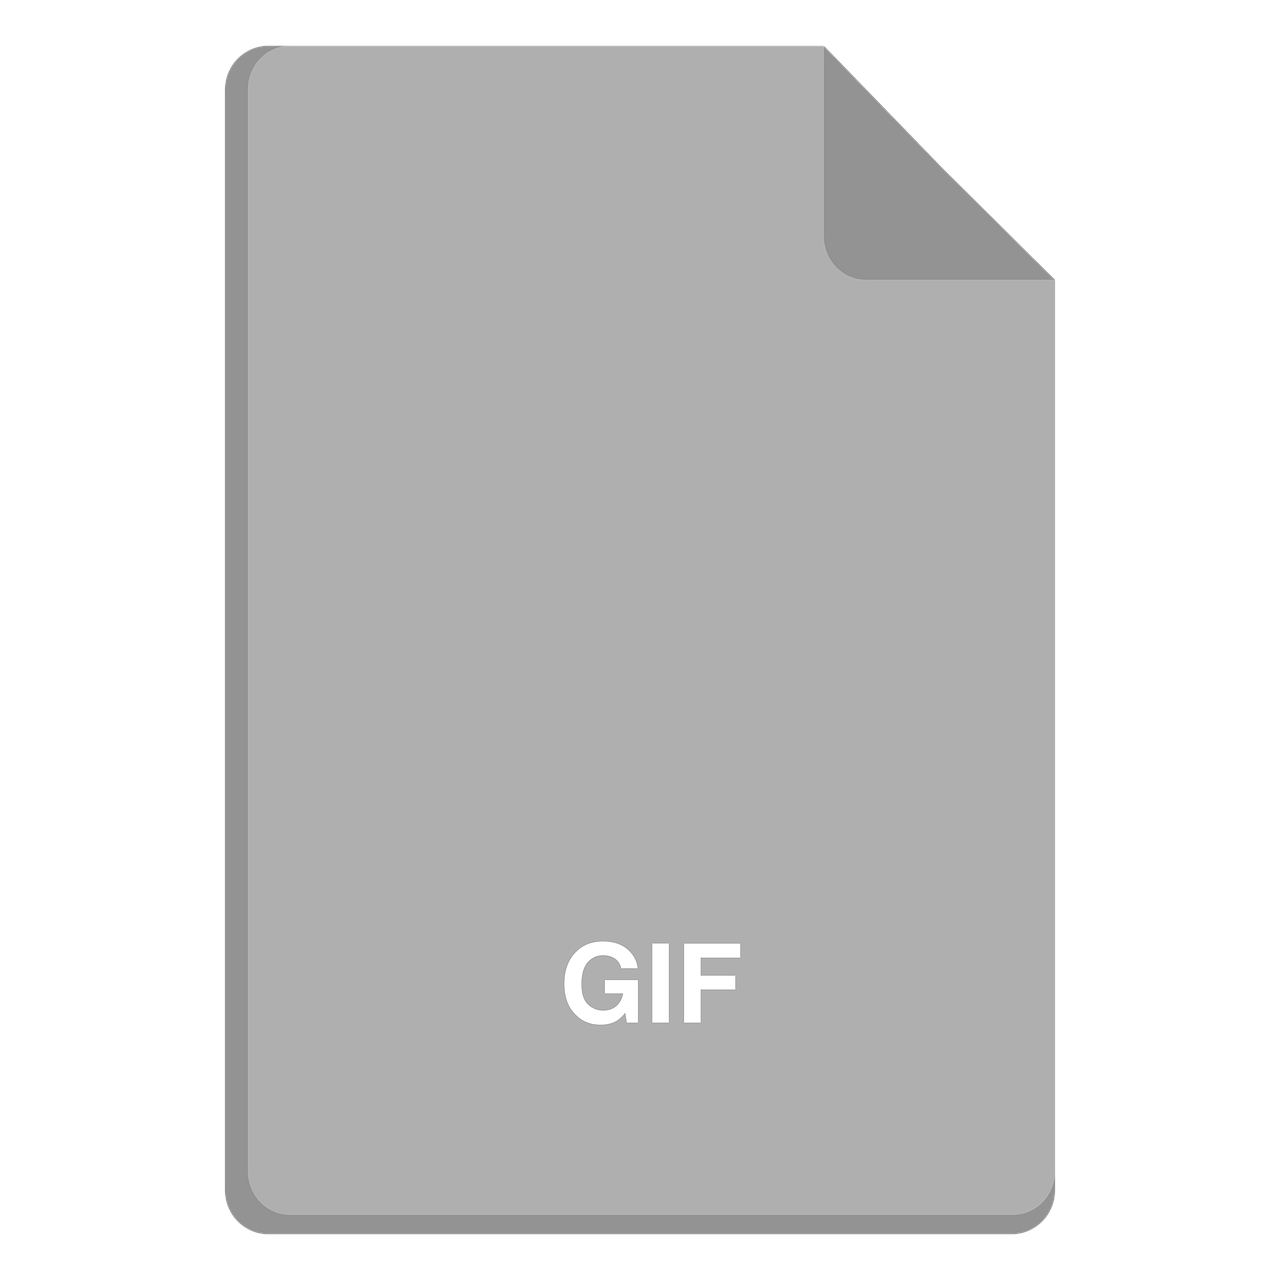 file icon  vector file  gif icon free photo